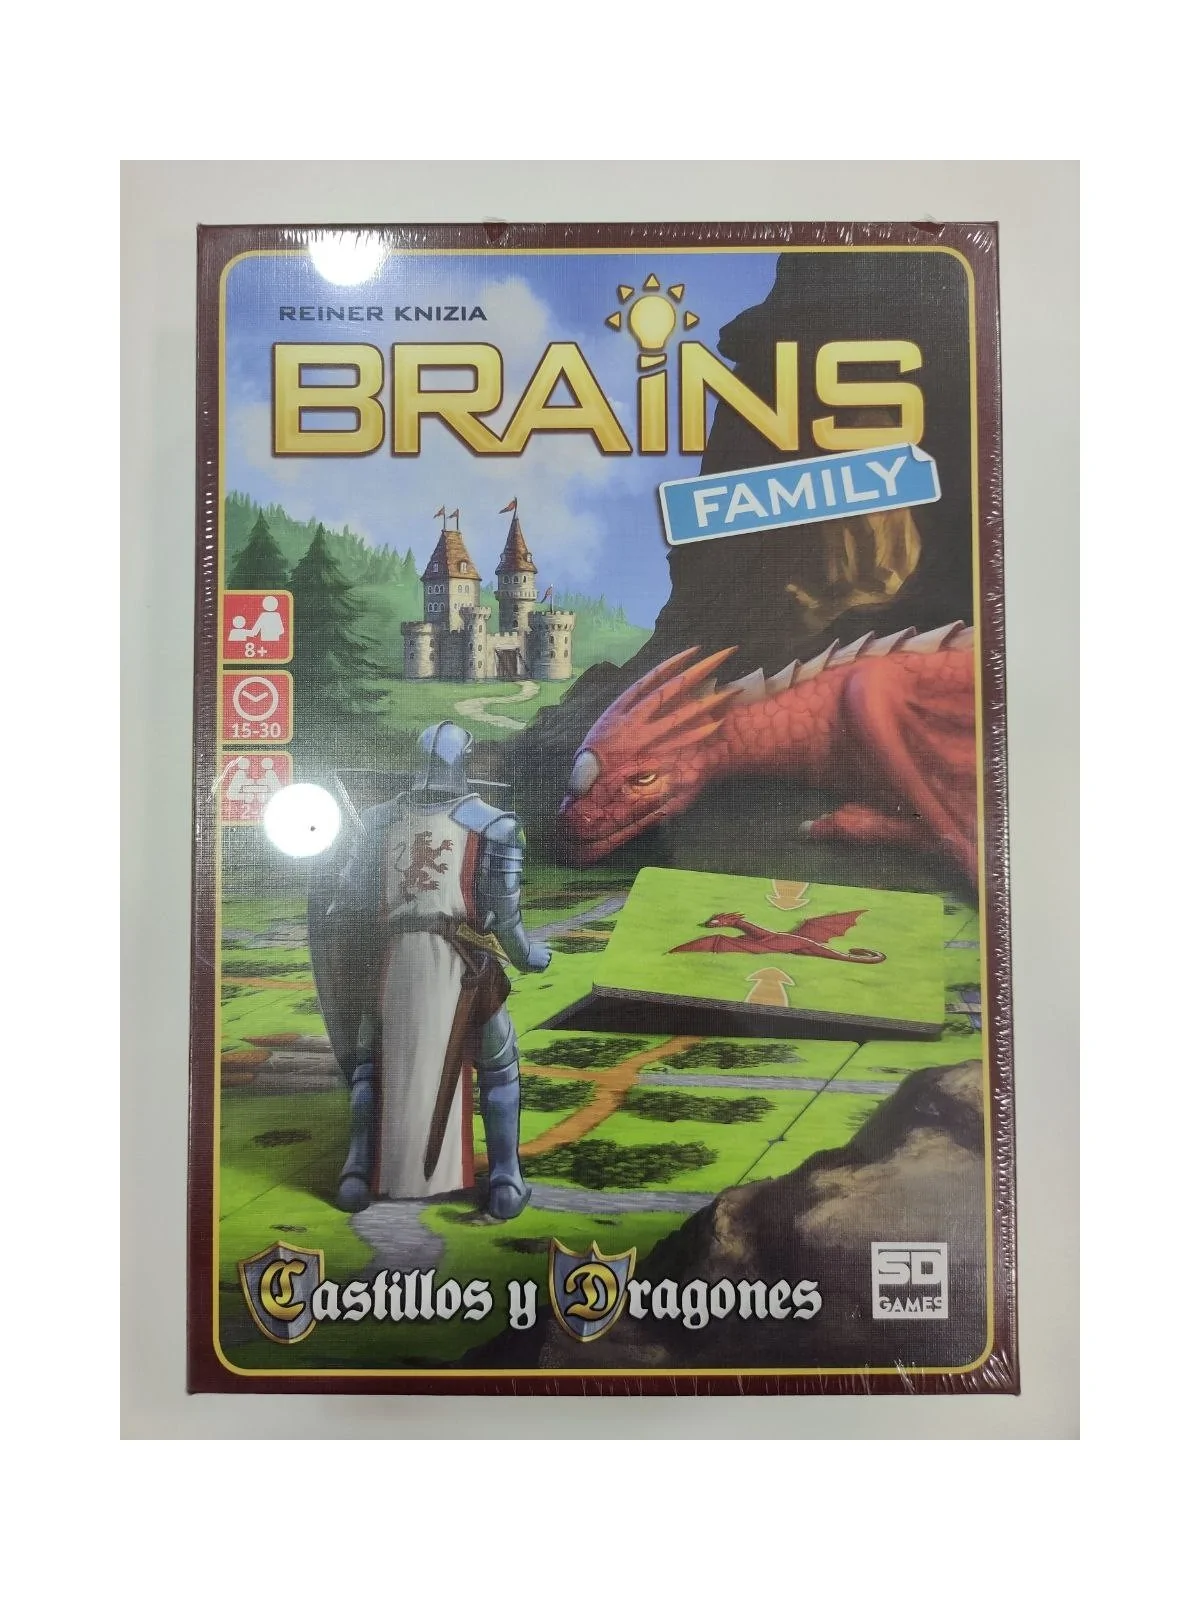 Comprar Brains Family: Castillos y Dragones [SEGUNDA MANO] barato al m